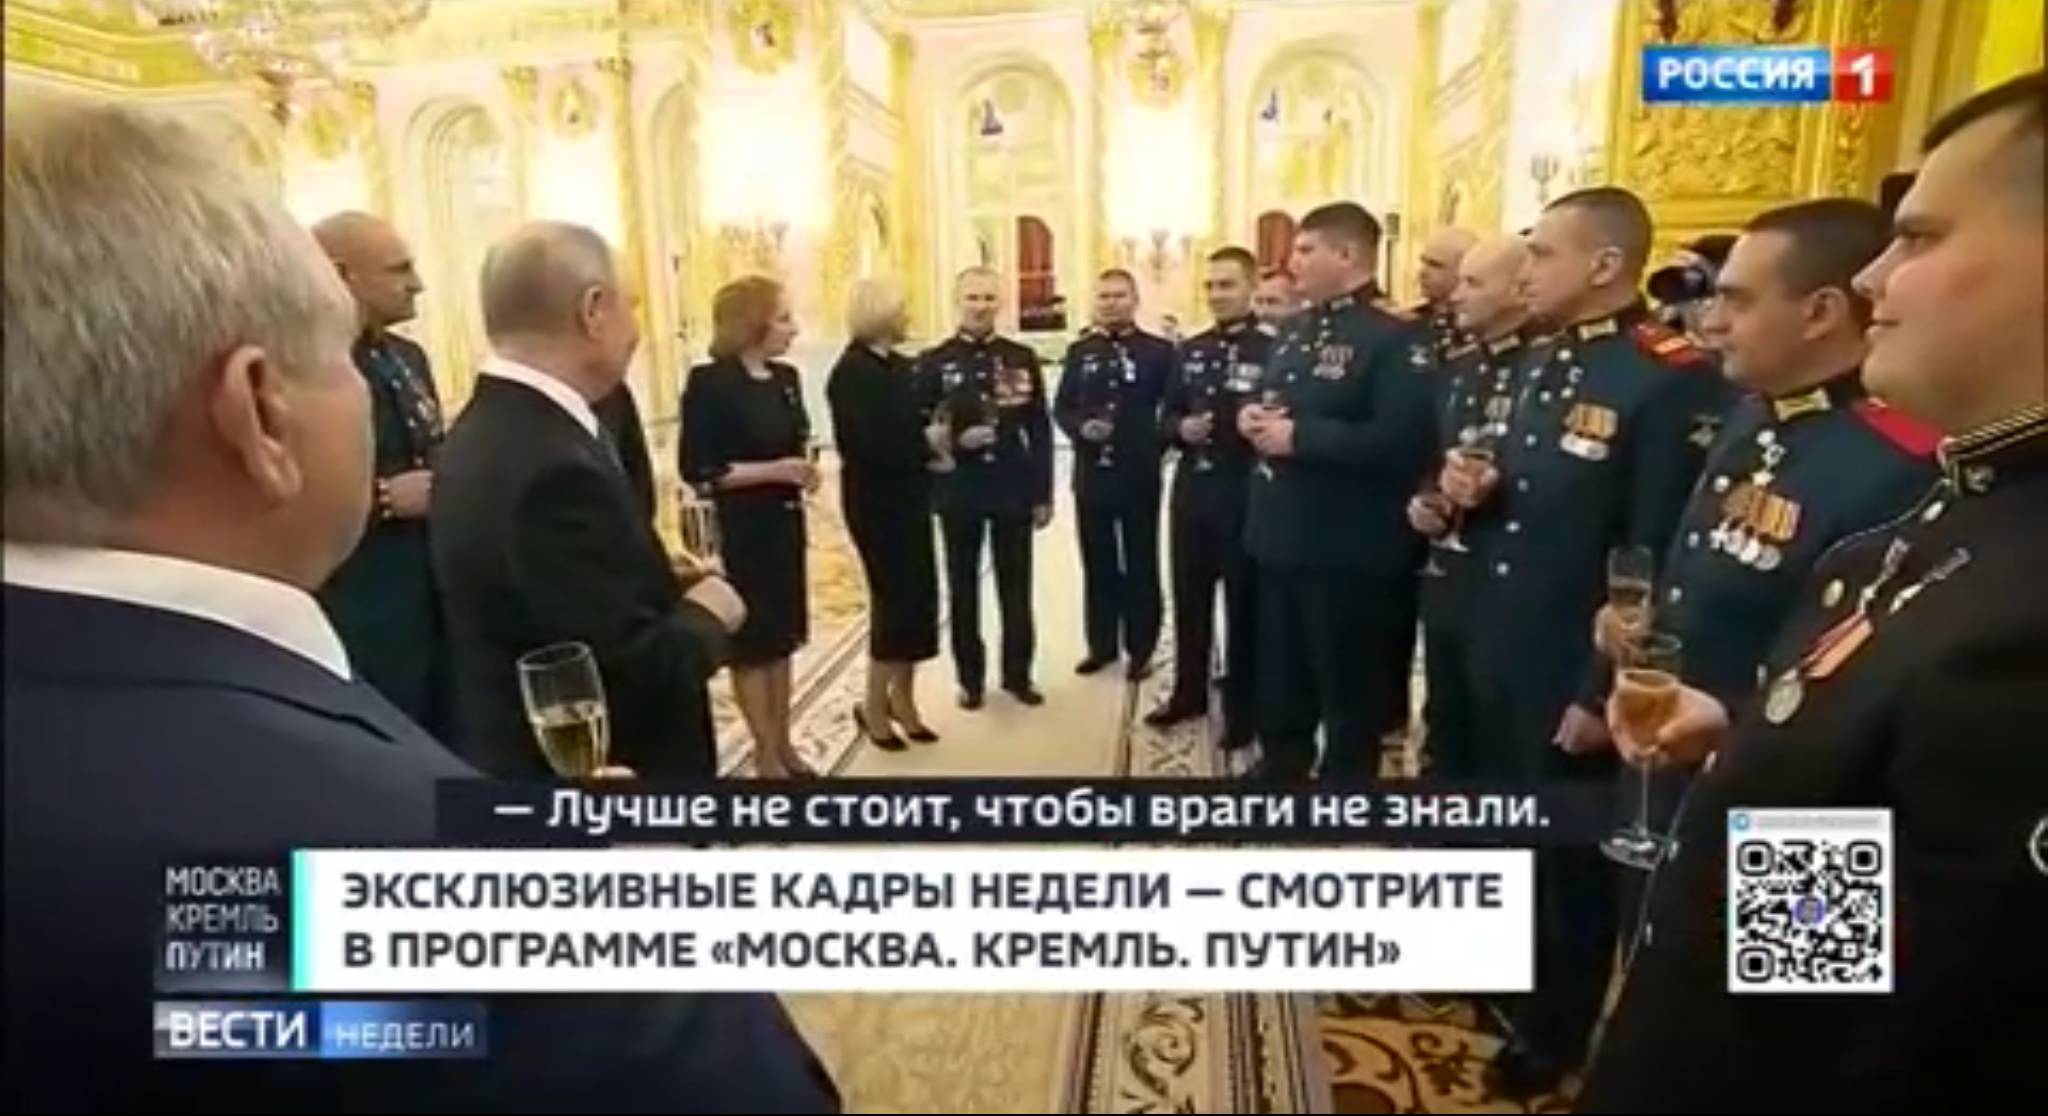 Putin z wojskowymi i kobietami w czerni pije białe wino